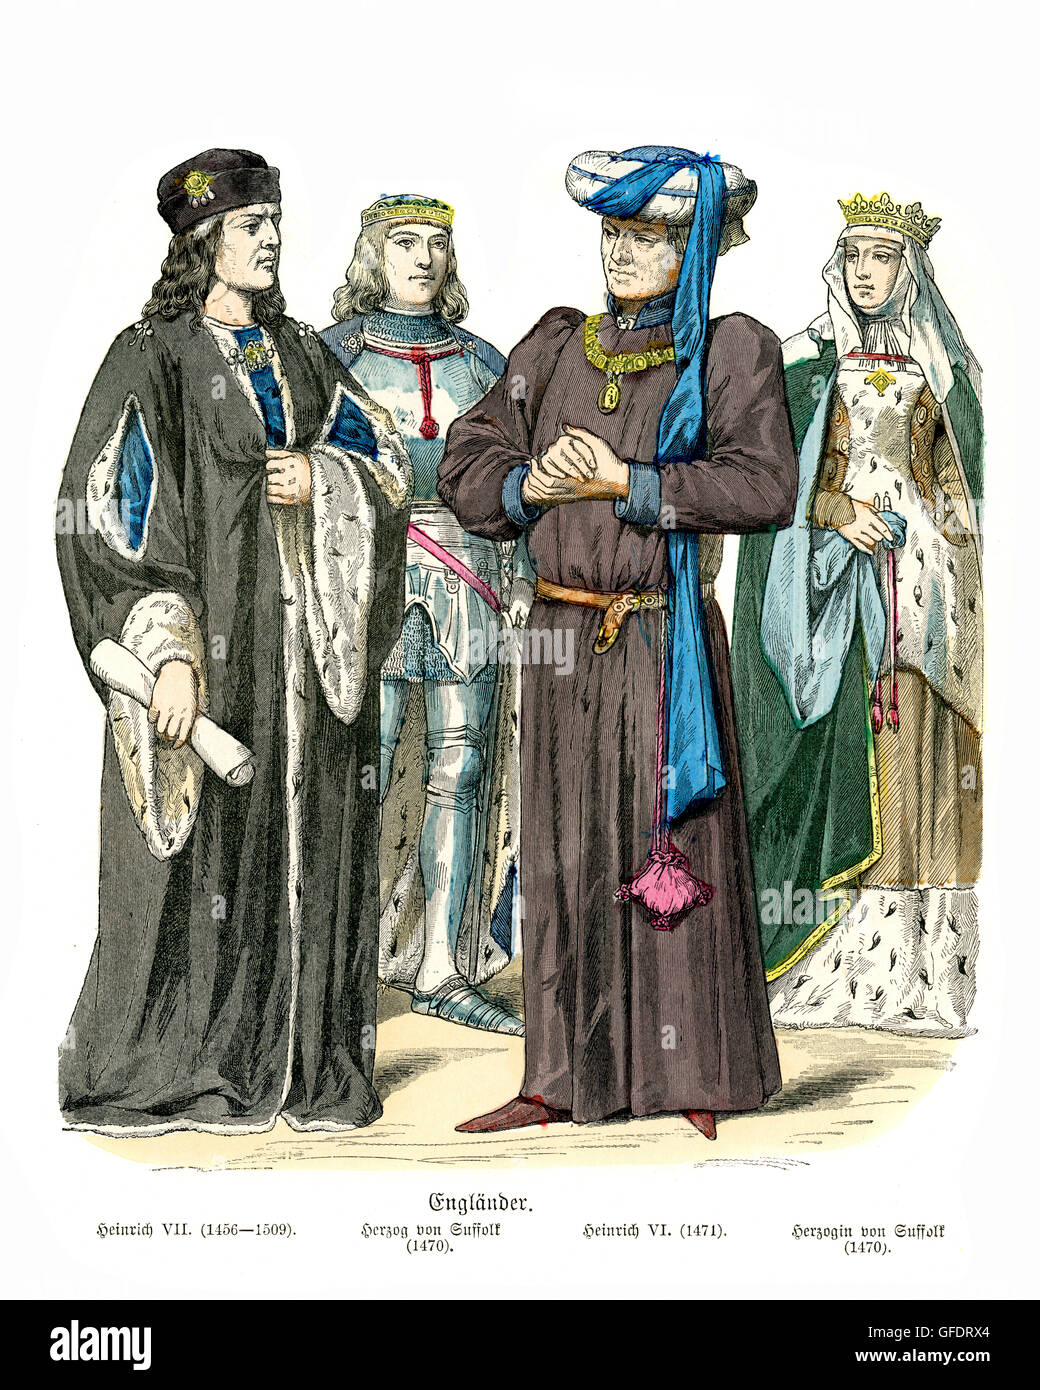 E Mens womens fashions medievale di Inghilterra. Il re Enrico VII duca di Suffolk, Enrico VI, duchessa di Suffolk. Xv secolo Foto Stock